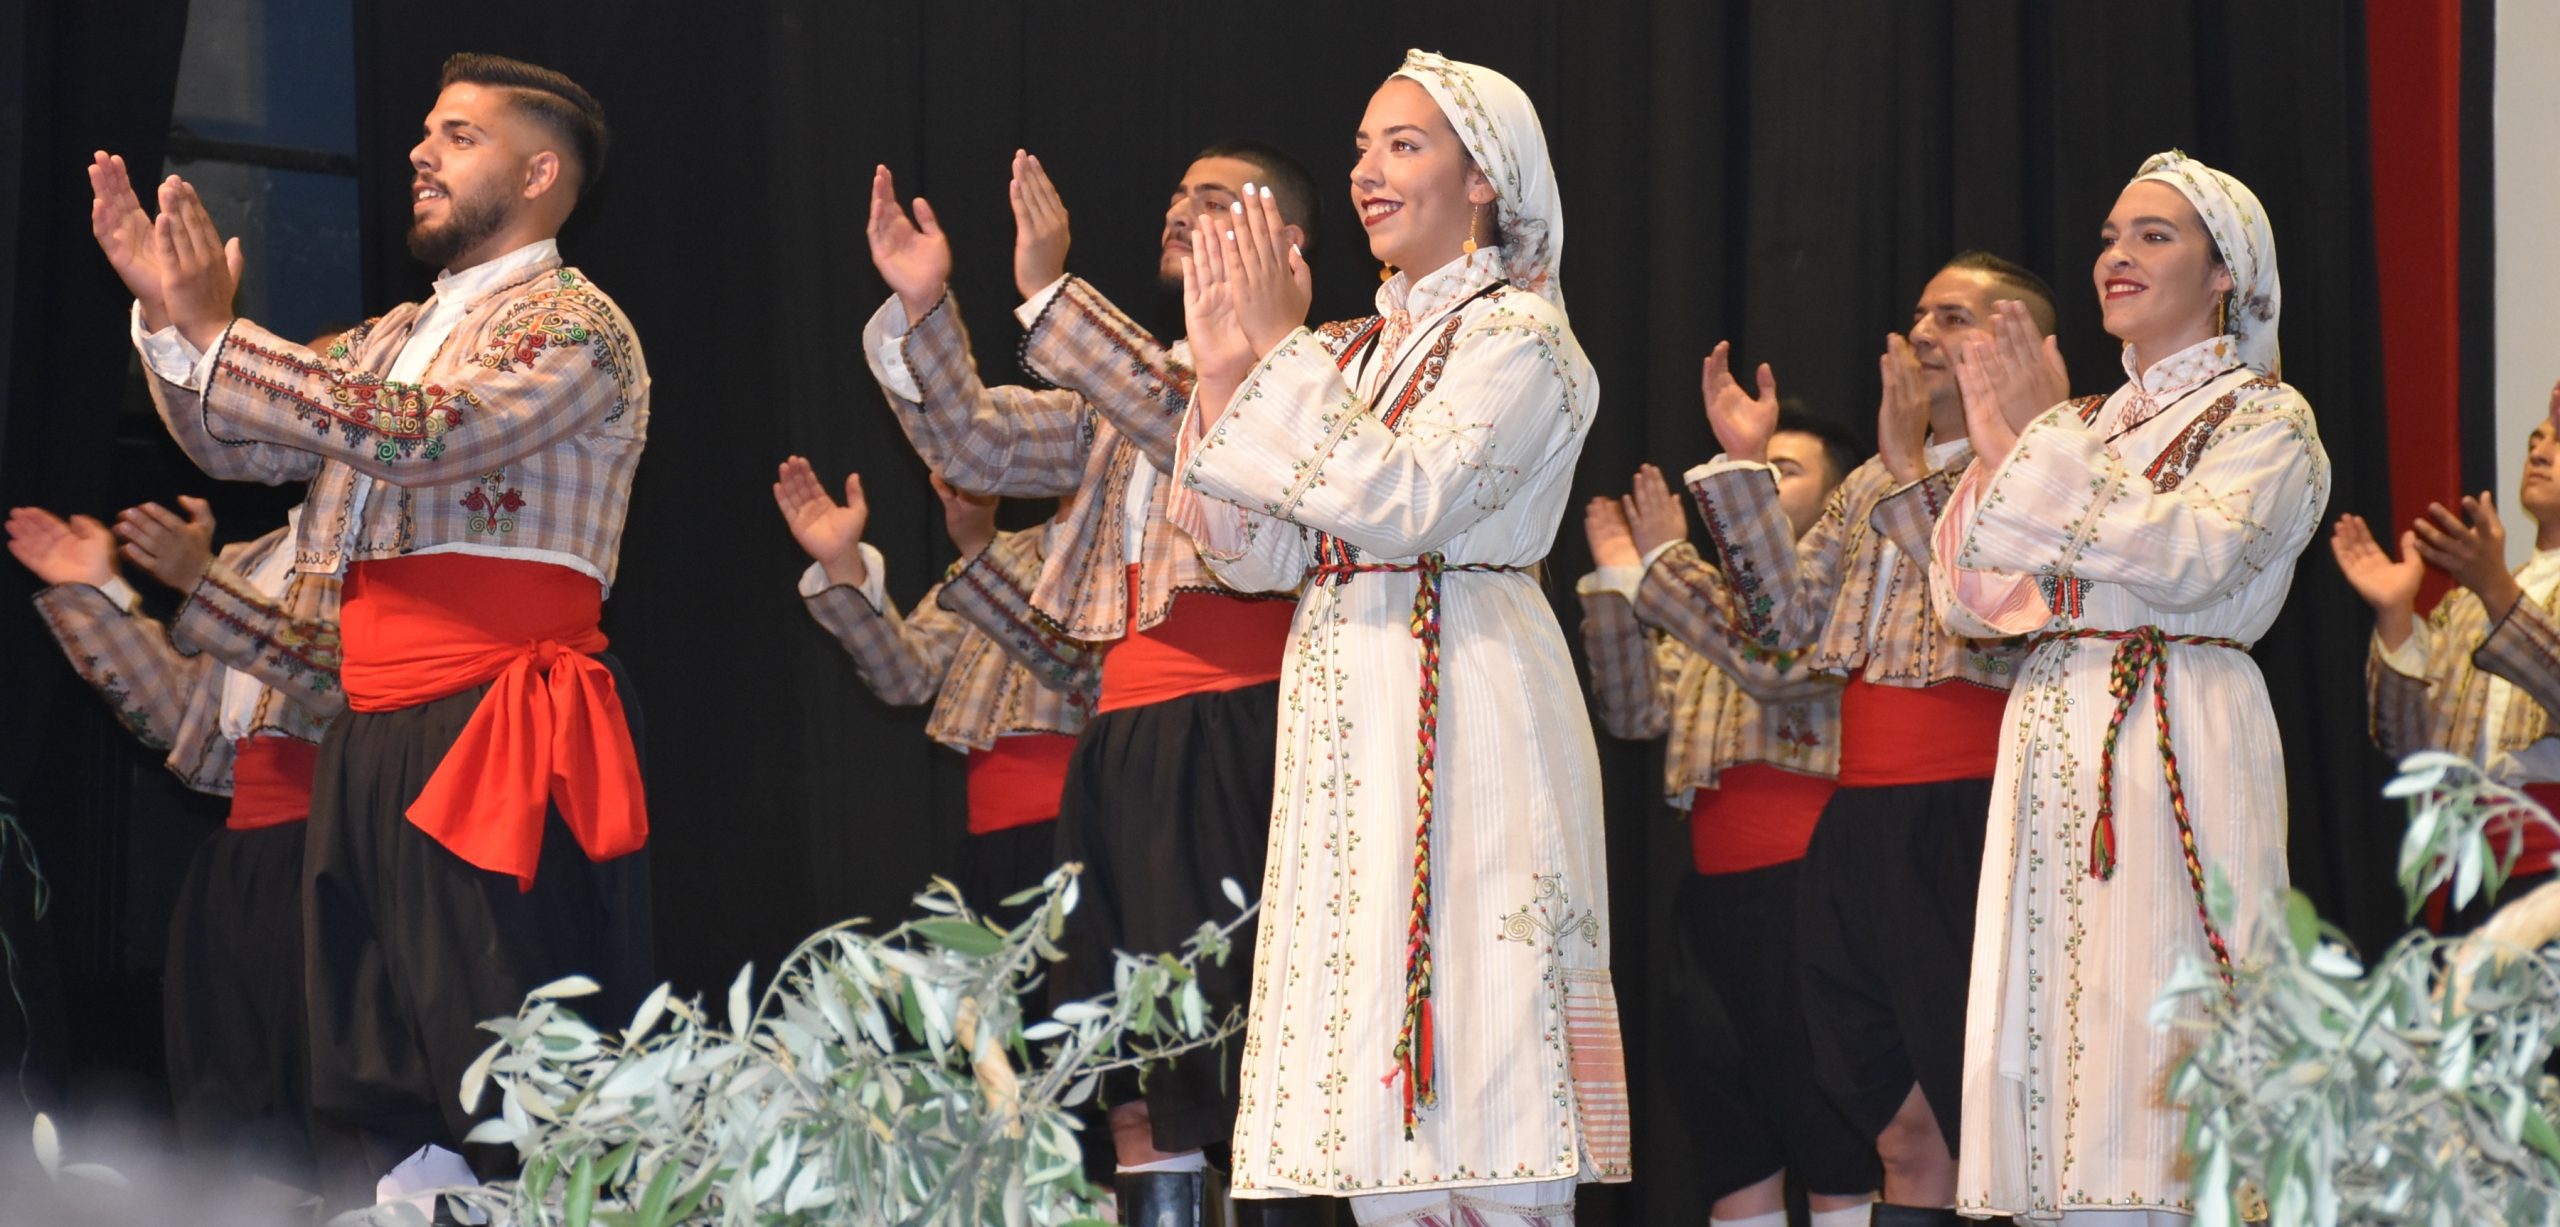 Halk Dansları Şöleni düzenlendi…Ataoğlu: “Kültürümüzün gelecek nesillere aktarılması önemli”